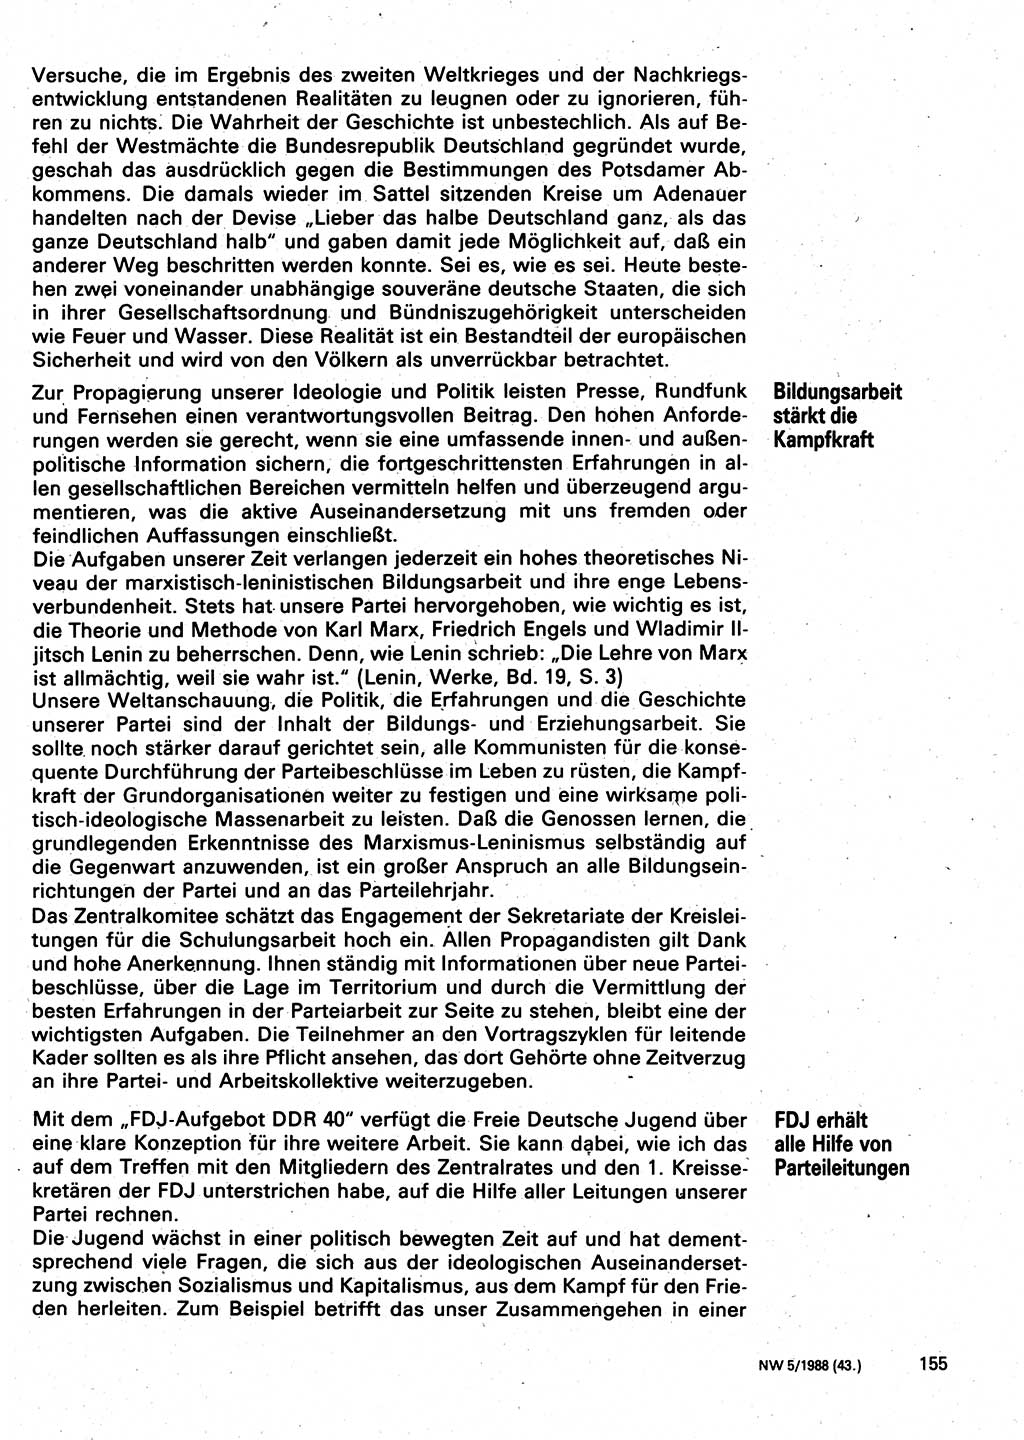 Neuer Weg (NW), Organ des Zentralkomitees (ZK) der SED (Sozialistische Einheitspartei Deutschlands) für Fragen des Parteilebens, 43. Jahrgang [Deutsche Demokratische Republik (DDR)] 1988, Seite 155 (NW ZK SED DDR 1988, S. 155)